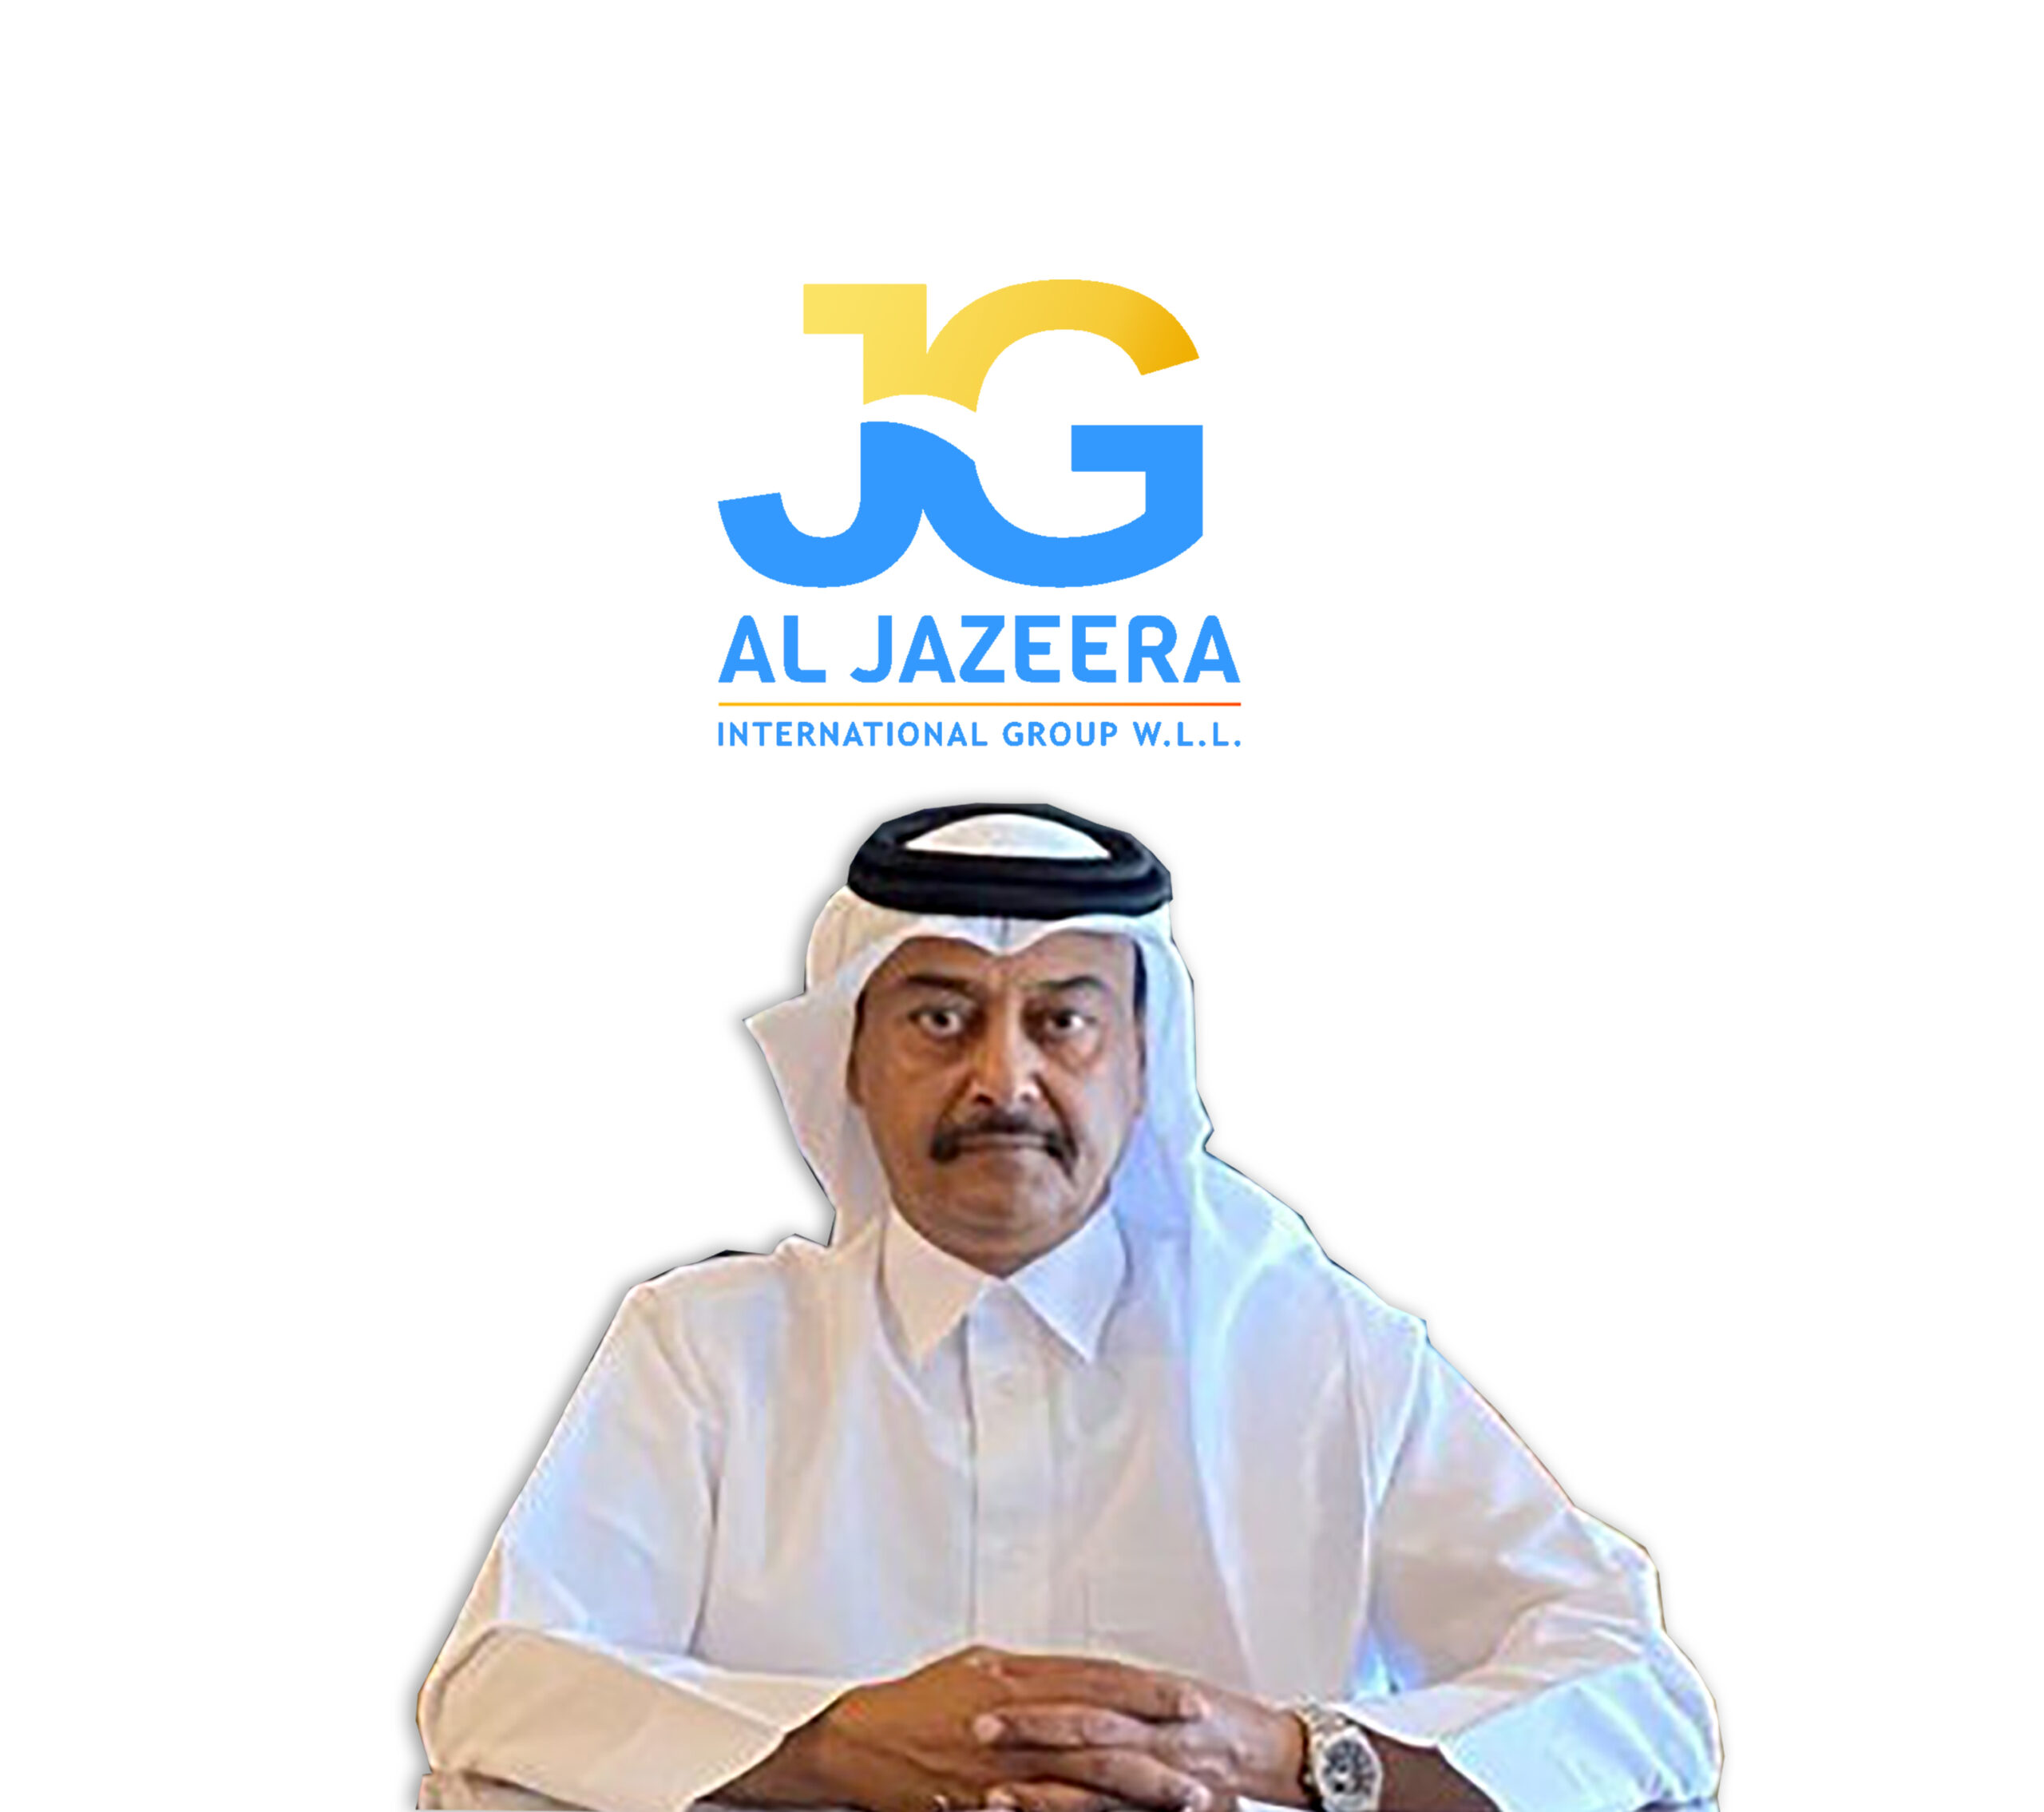 Al Jazeera International Group